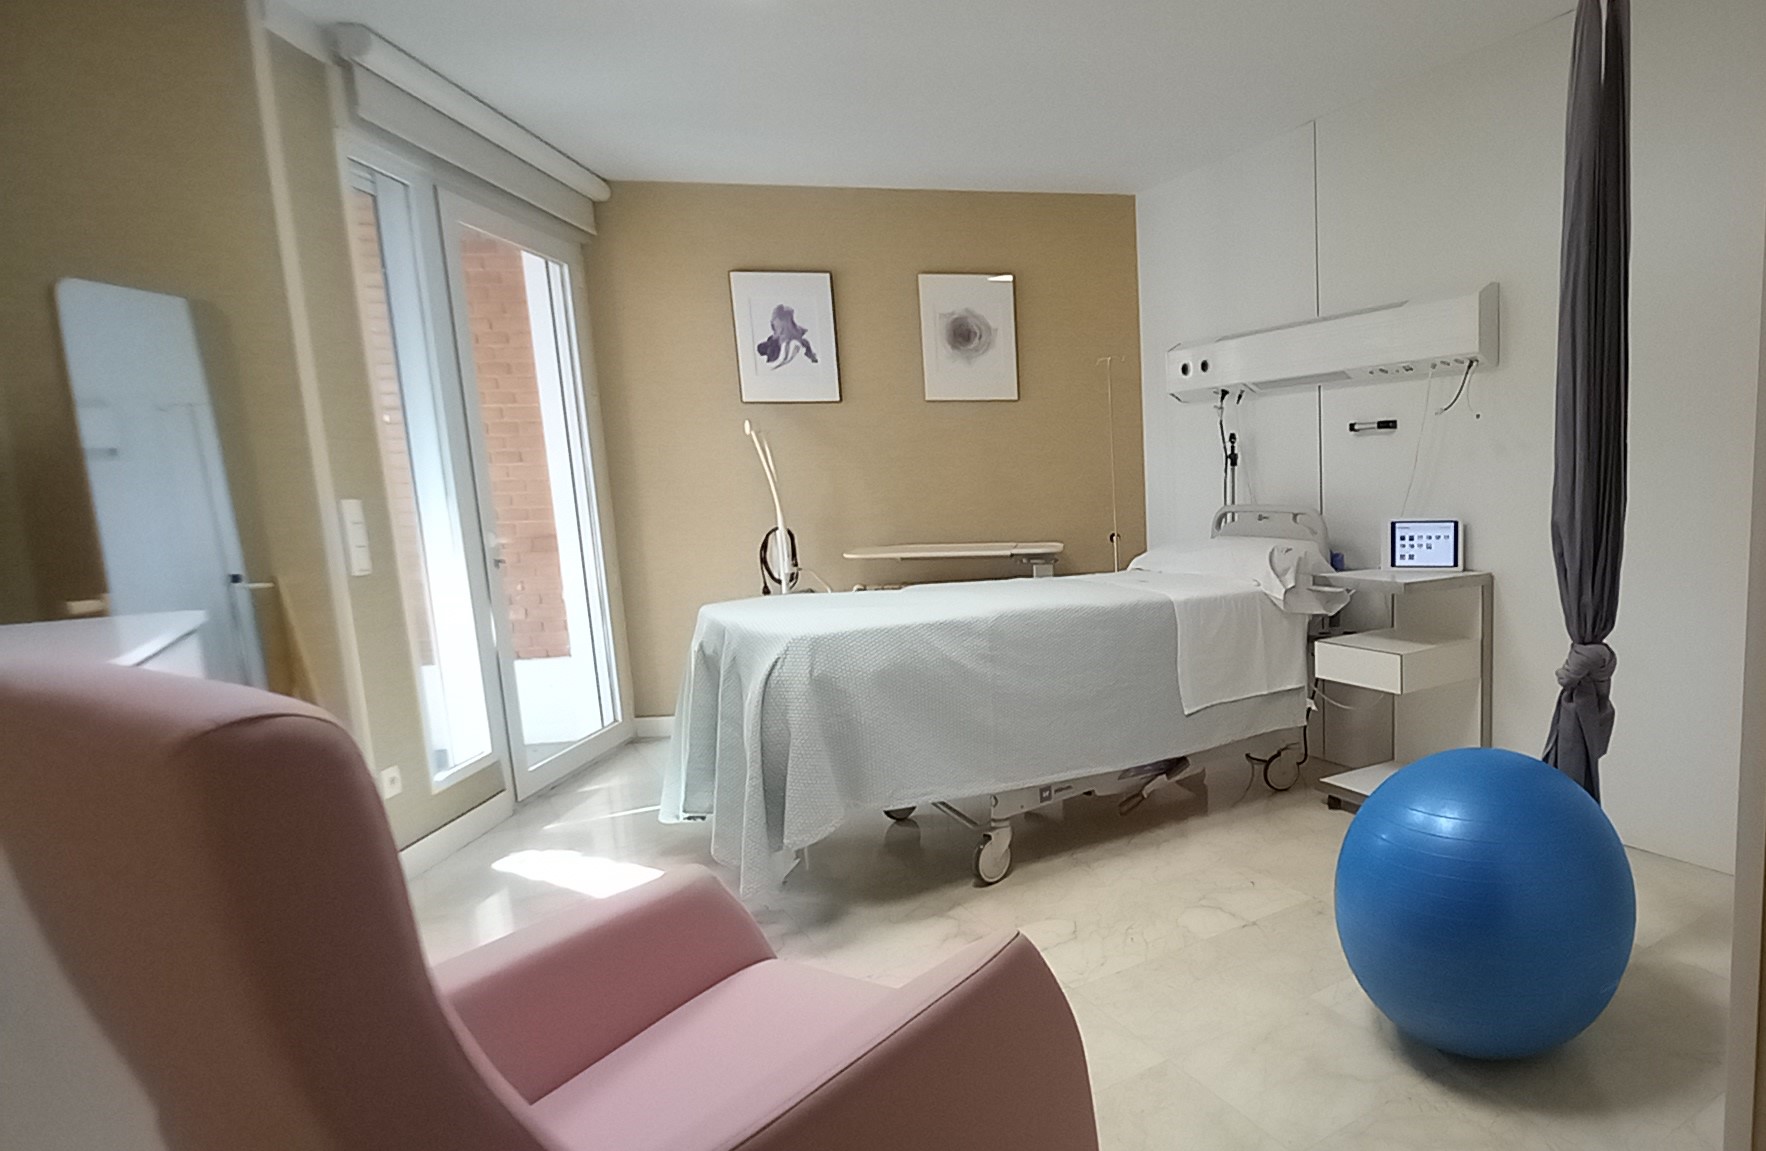 El Ruber Internacional adapta sus instalaciones de maternidad con salas de parto integrado